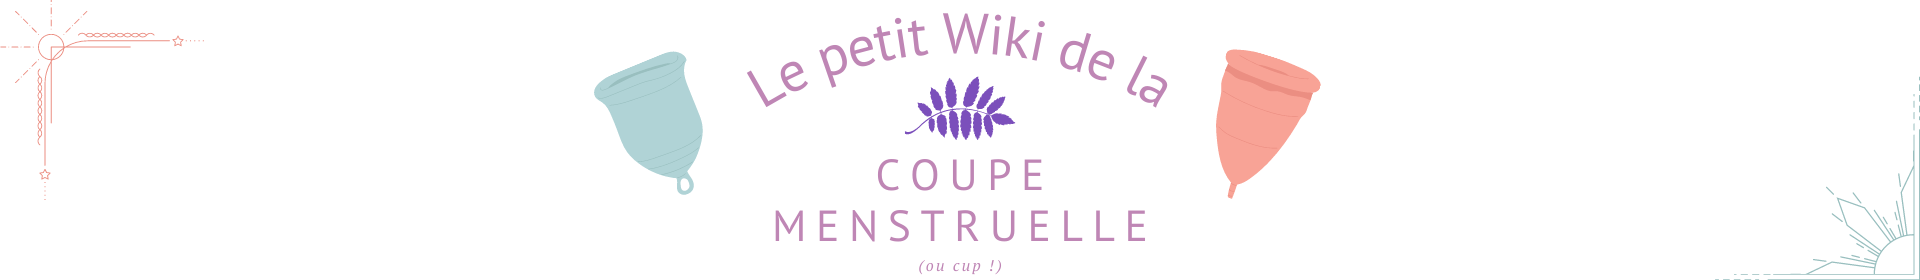 Bannière annonçant : Le petit wiki de la coupe menstruelle (ou cup)
Lien vers: PagePrincipale